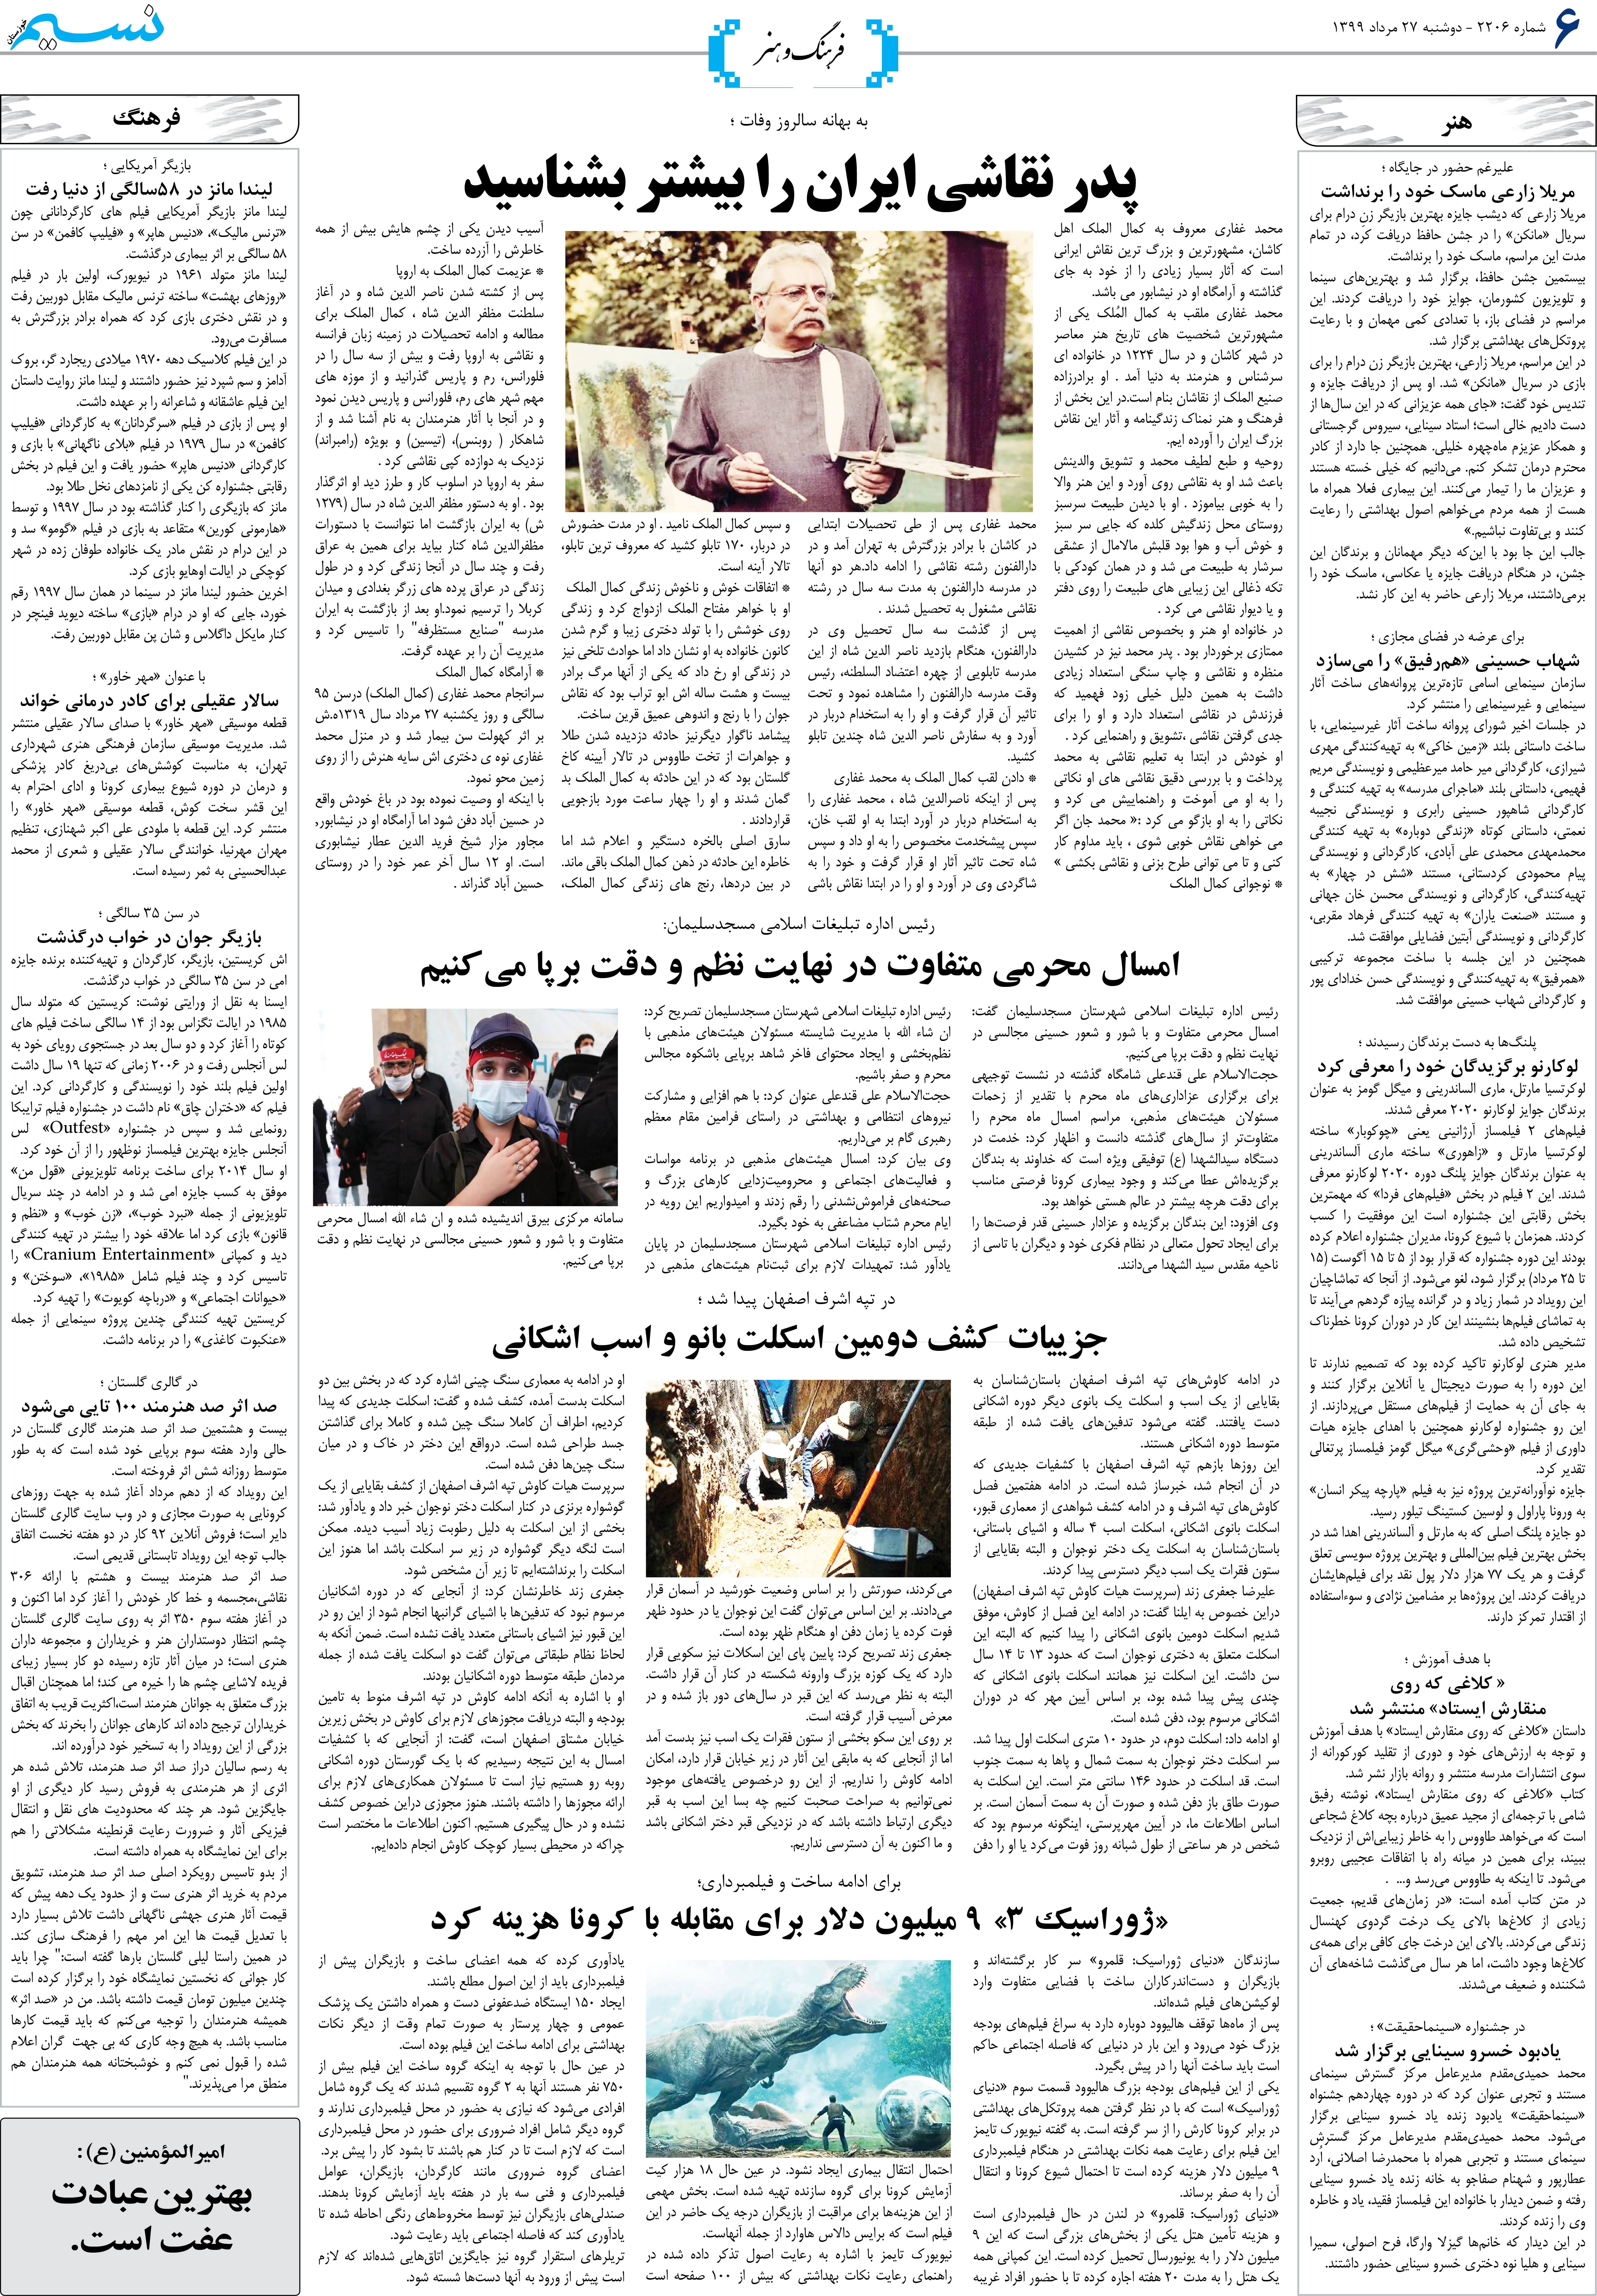 صفحه فرهنگ و هنر روزنامه نسیم شماره 2206